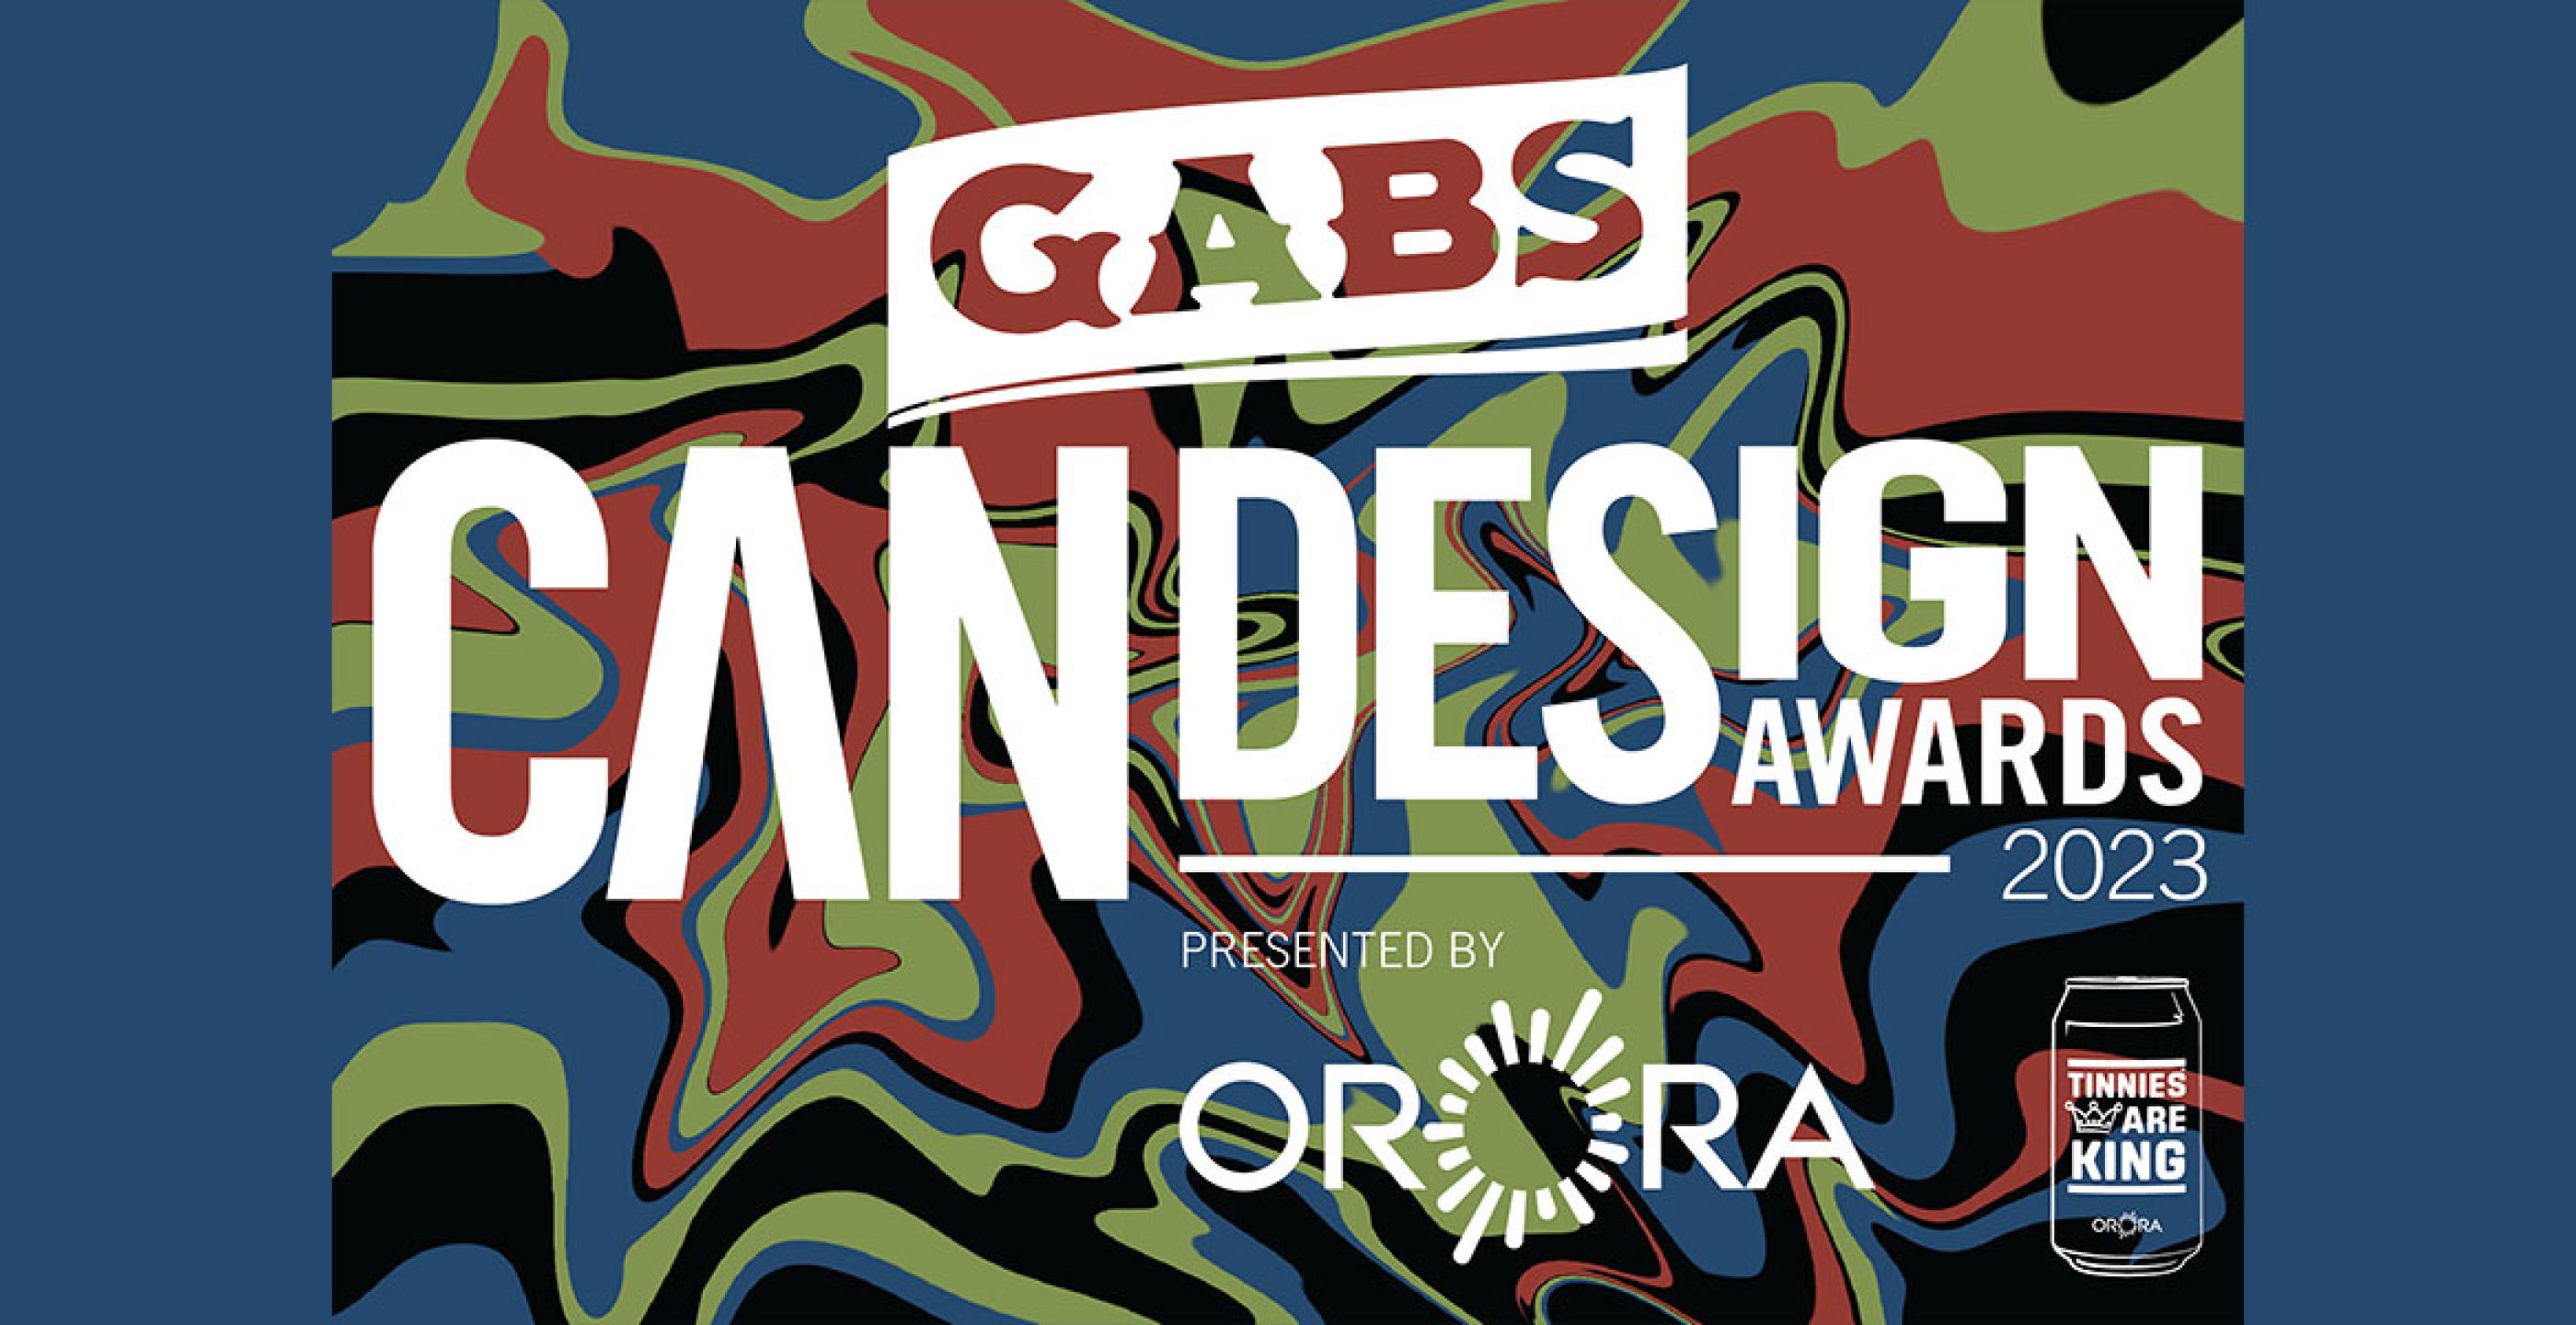 GABS Craft Beer Can Design Awards Returns For 2023